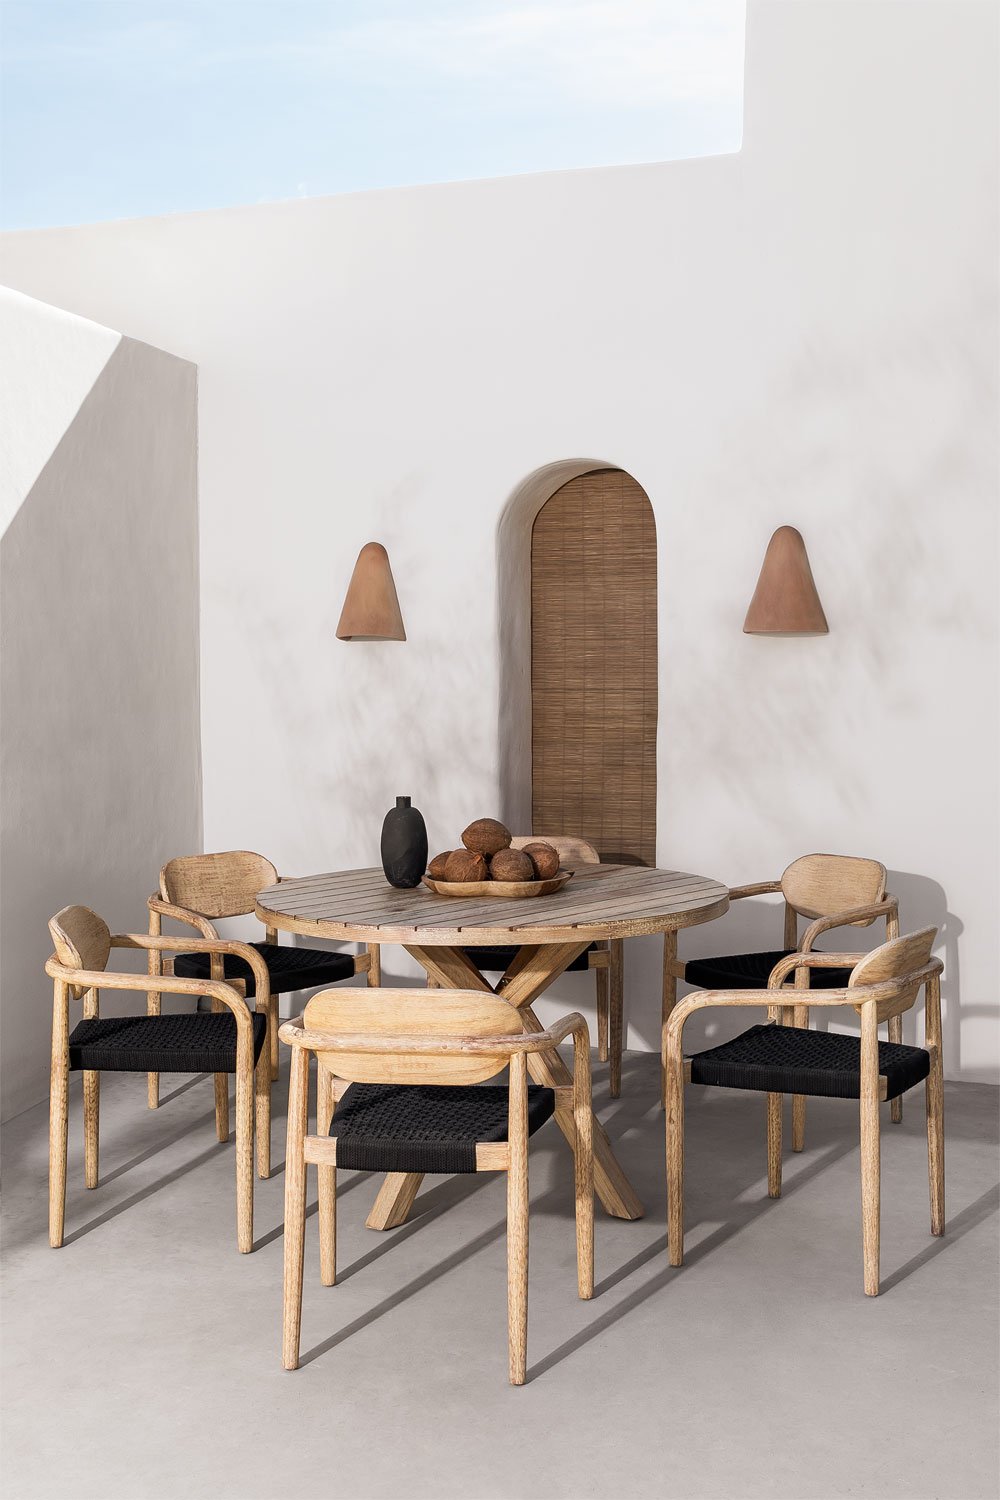 Set van ronde tafel (Ø120 cm) en 6 tuinstoelen met armleuningen in hout Naele , galerij beeld 1